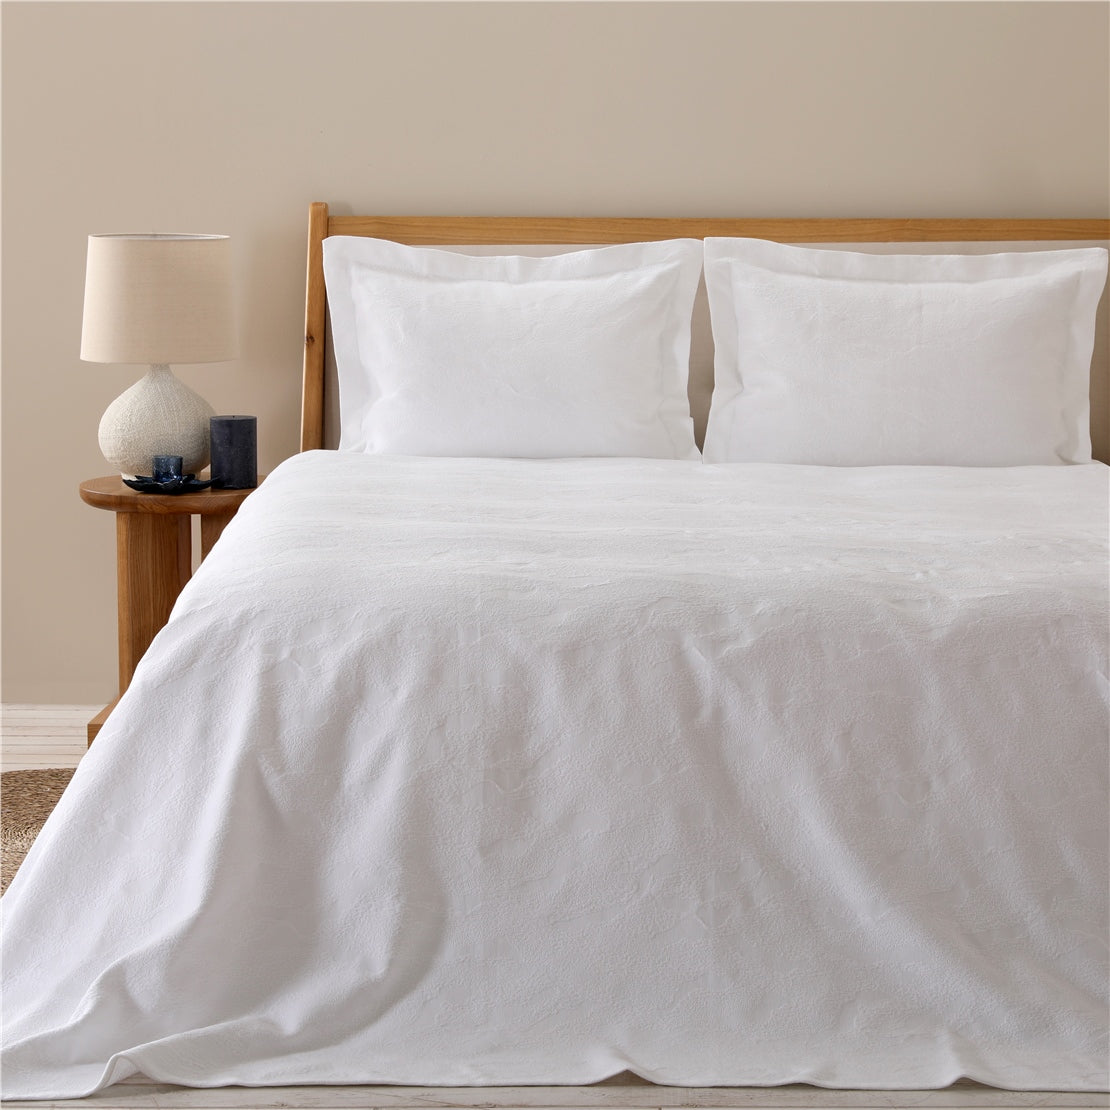 طقم غطاء سرير إيما مقاس كينغ 280 × 250 سم أبيض من شاكرا